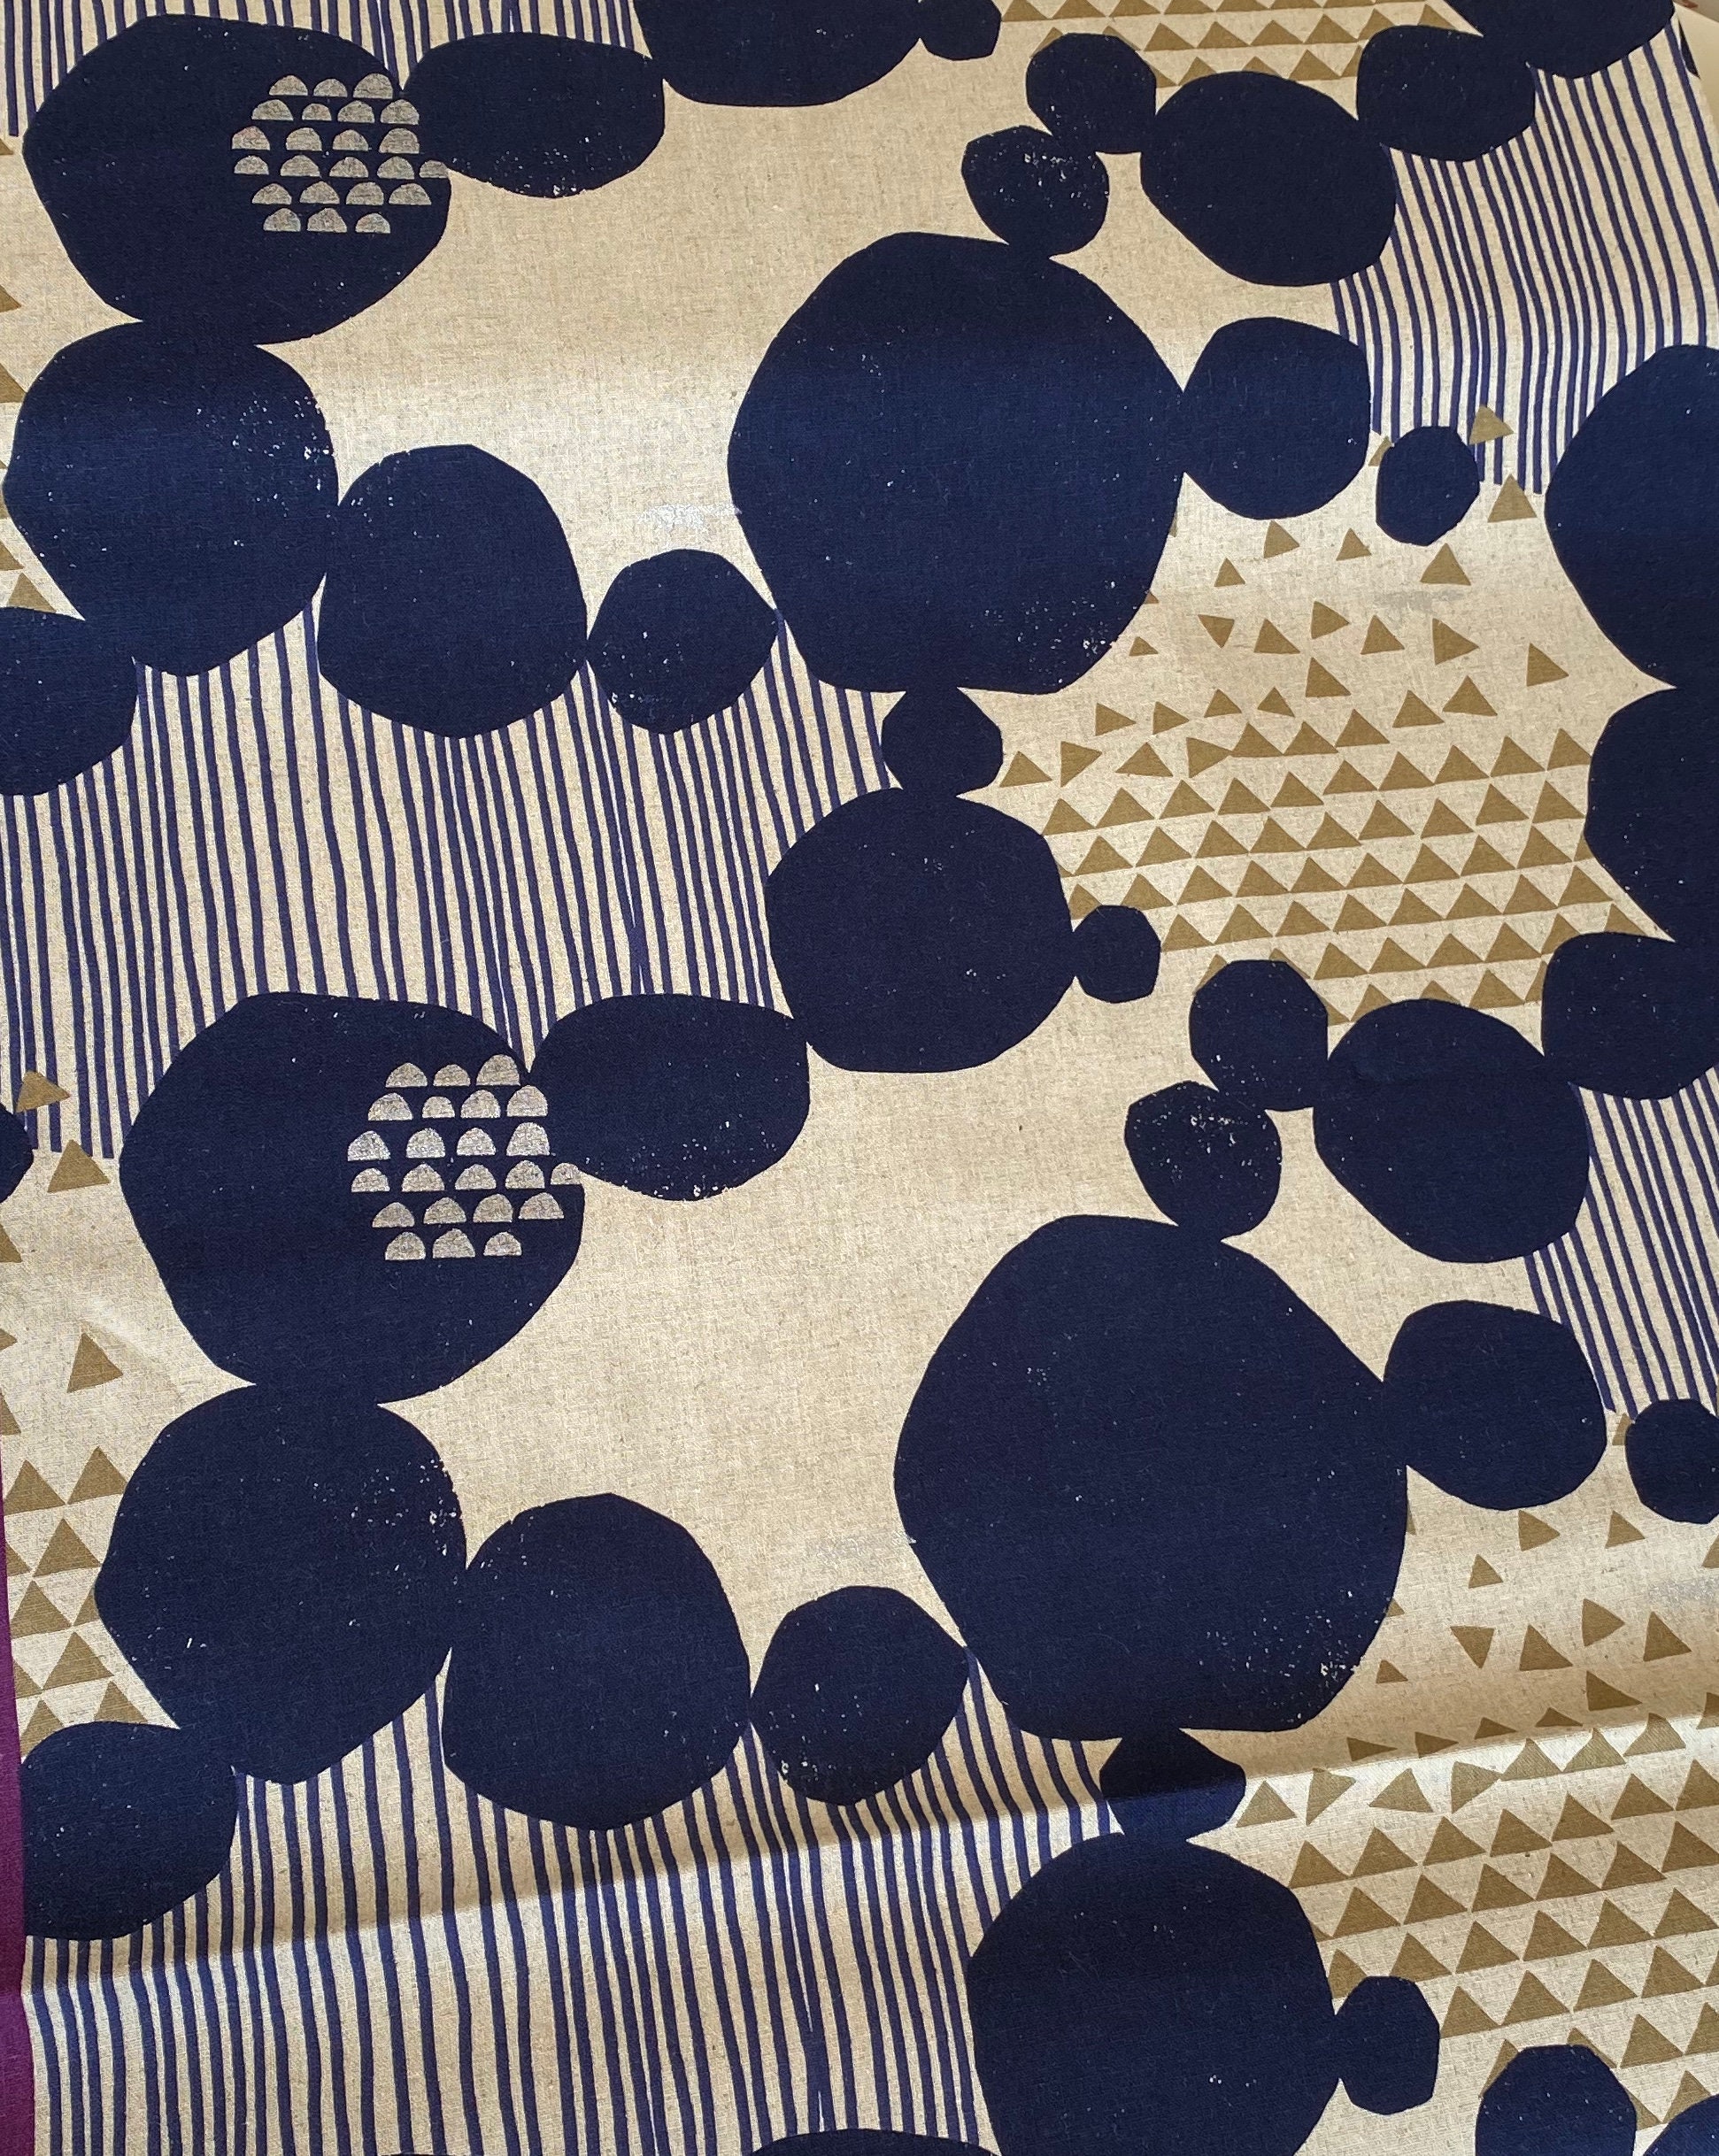 Japanese Echino abstract Art fabric by Etsuko Furuya, Stone-Navy, from ...